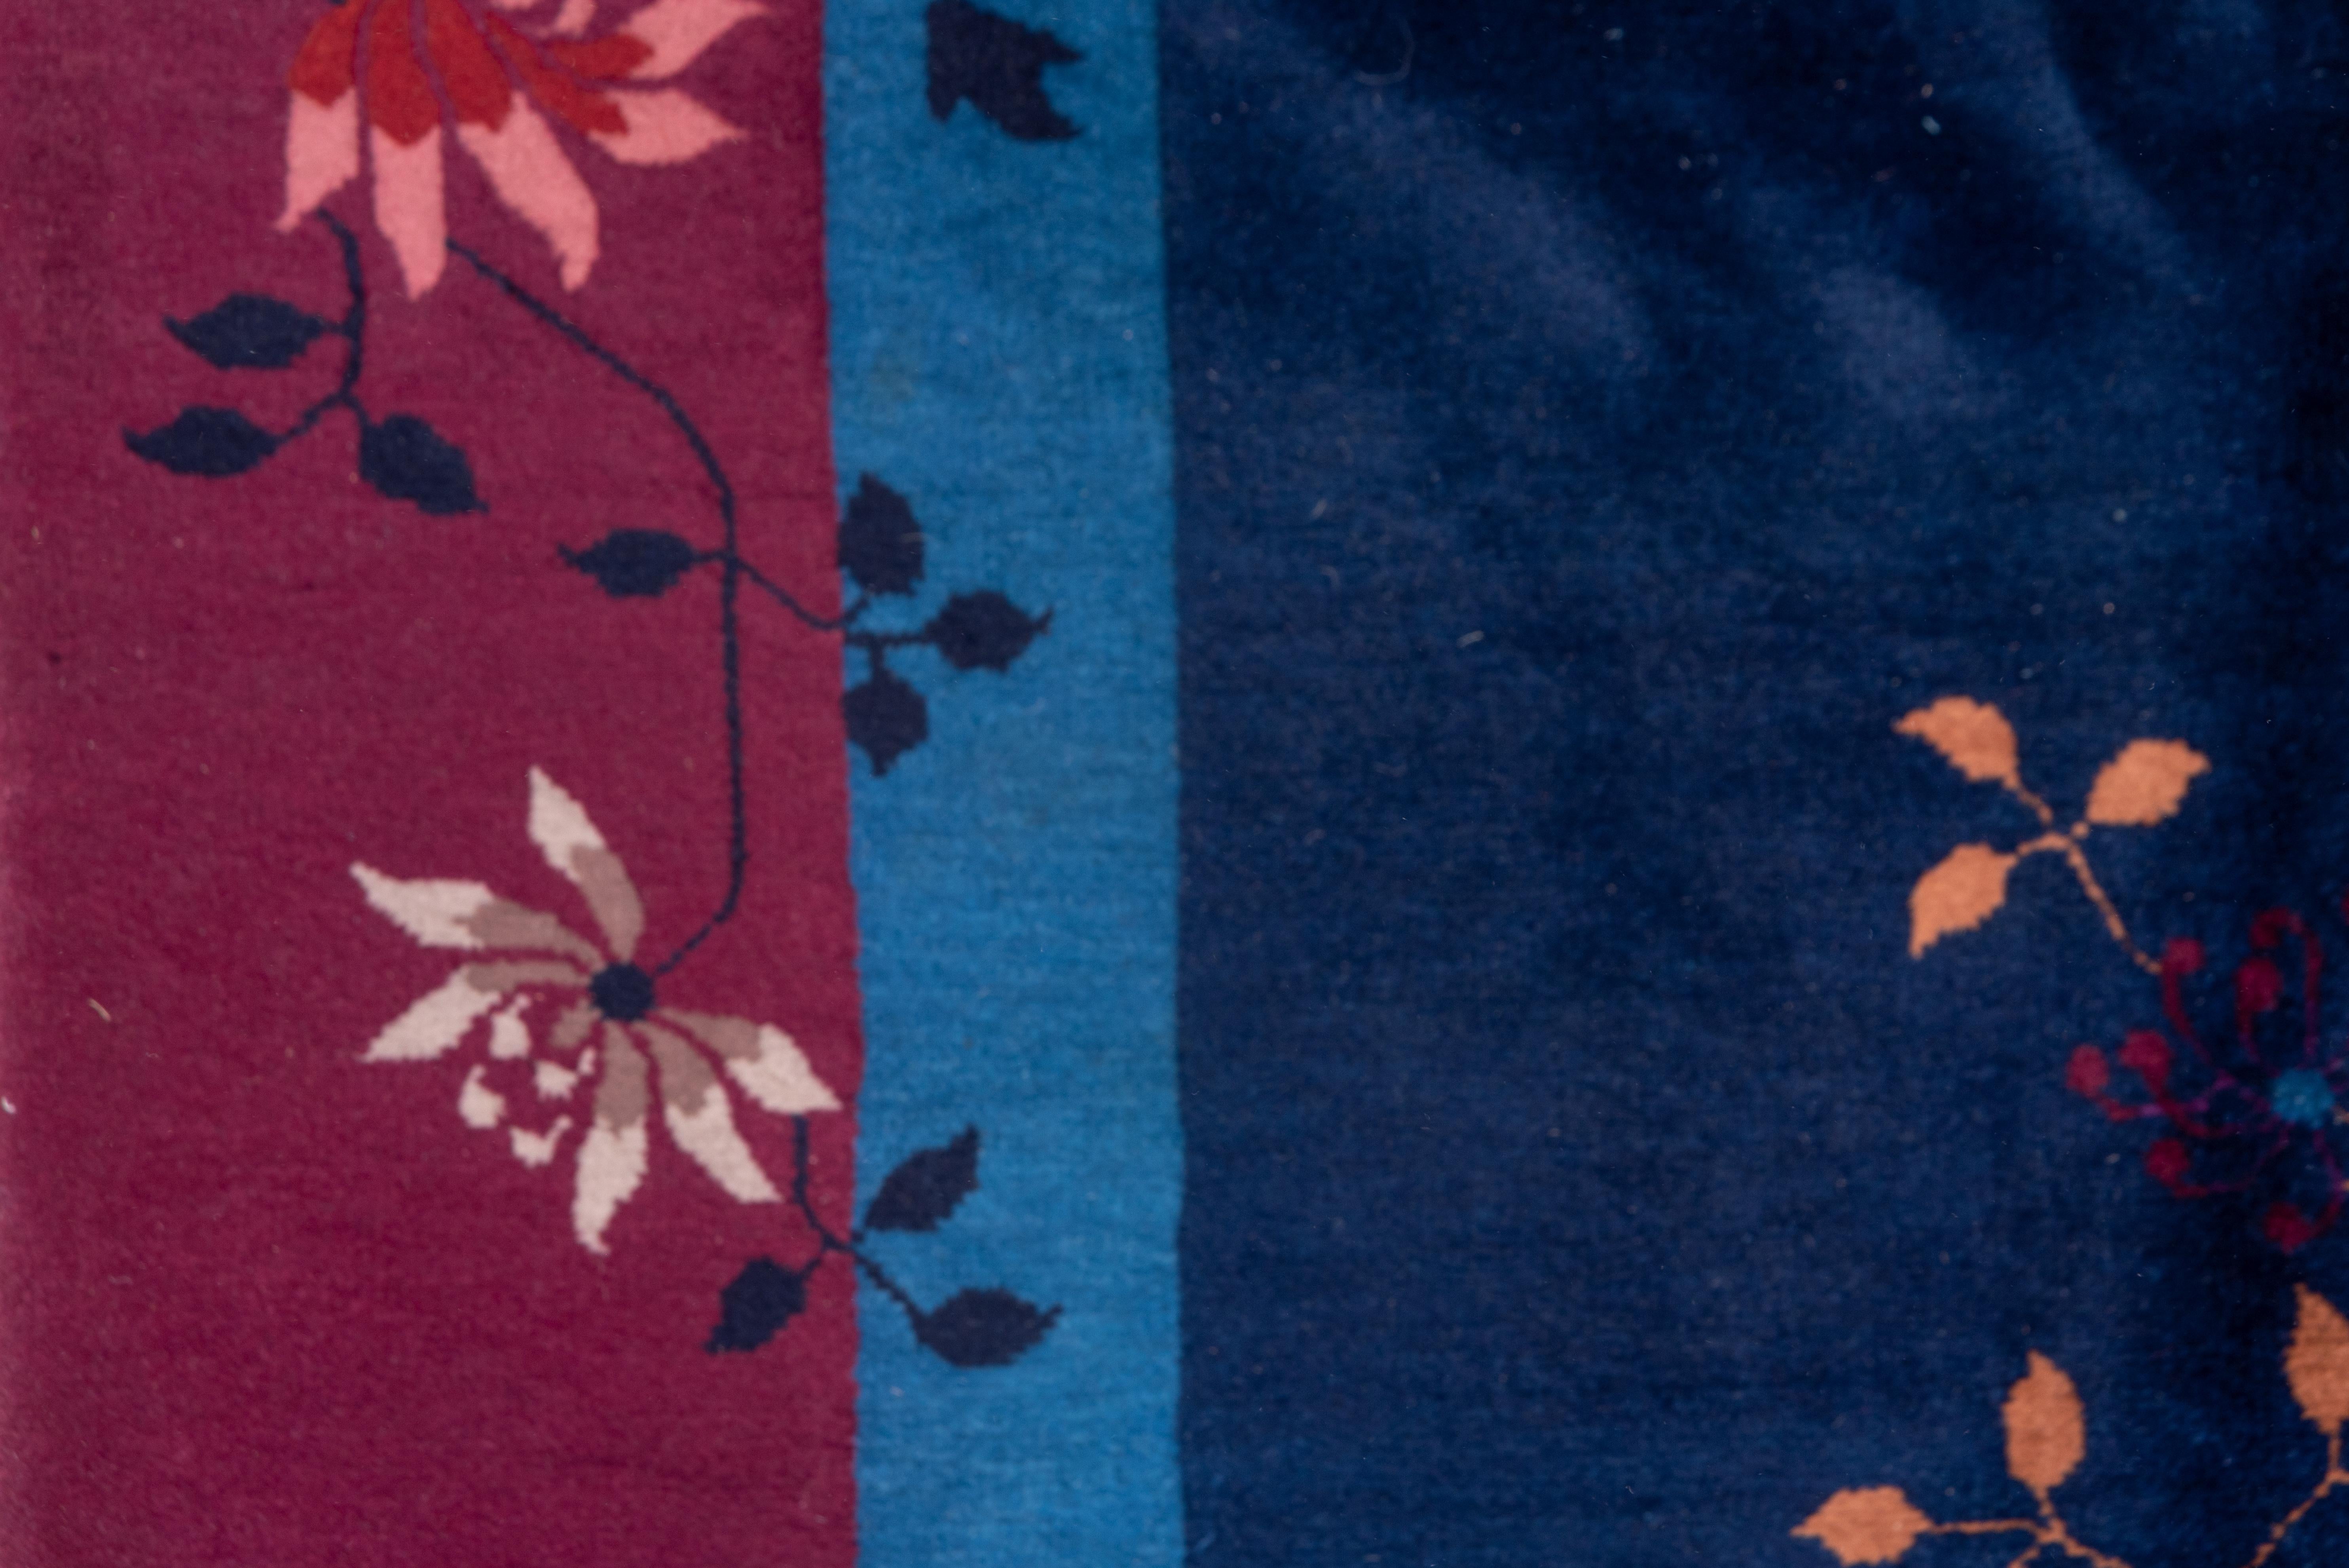 Ce tapis urbain de l'entre-deux-guerres à tissage moyen présente un champ bleu royal centré sur un motif géant polychrome de fleurs et de tiges, avec des oiseaux et des papillons qui voltigent. Vase et pots dans la bordure profonde de framboise. Des